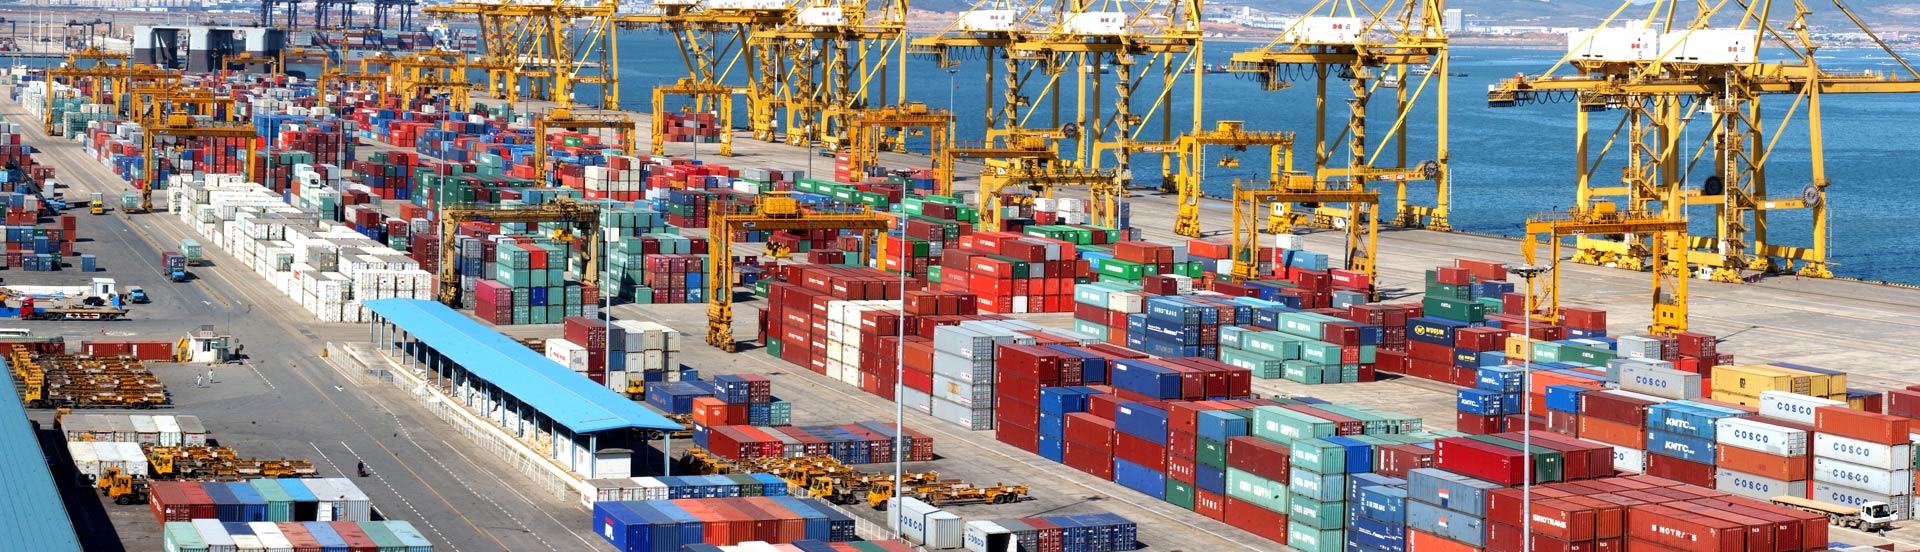 天津港到Hamburg, Germany 汉堡,德国
海运费集装箱海运费